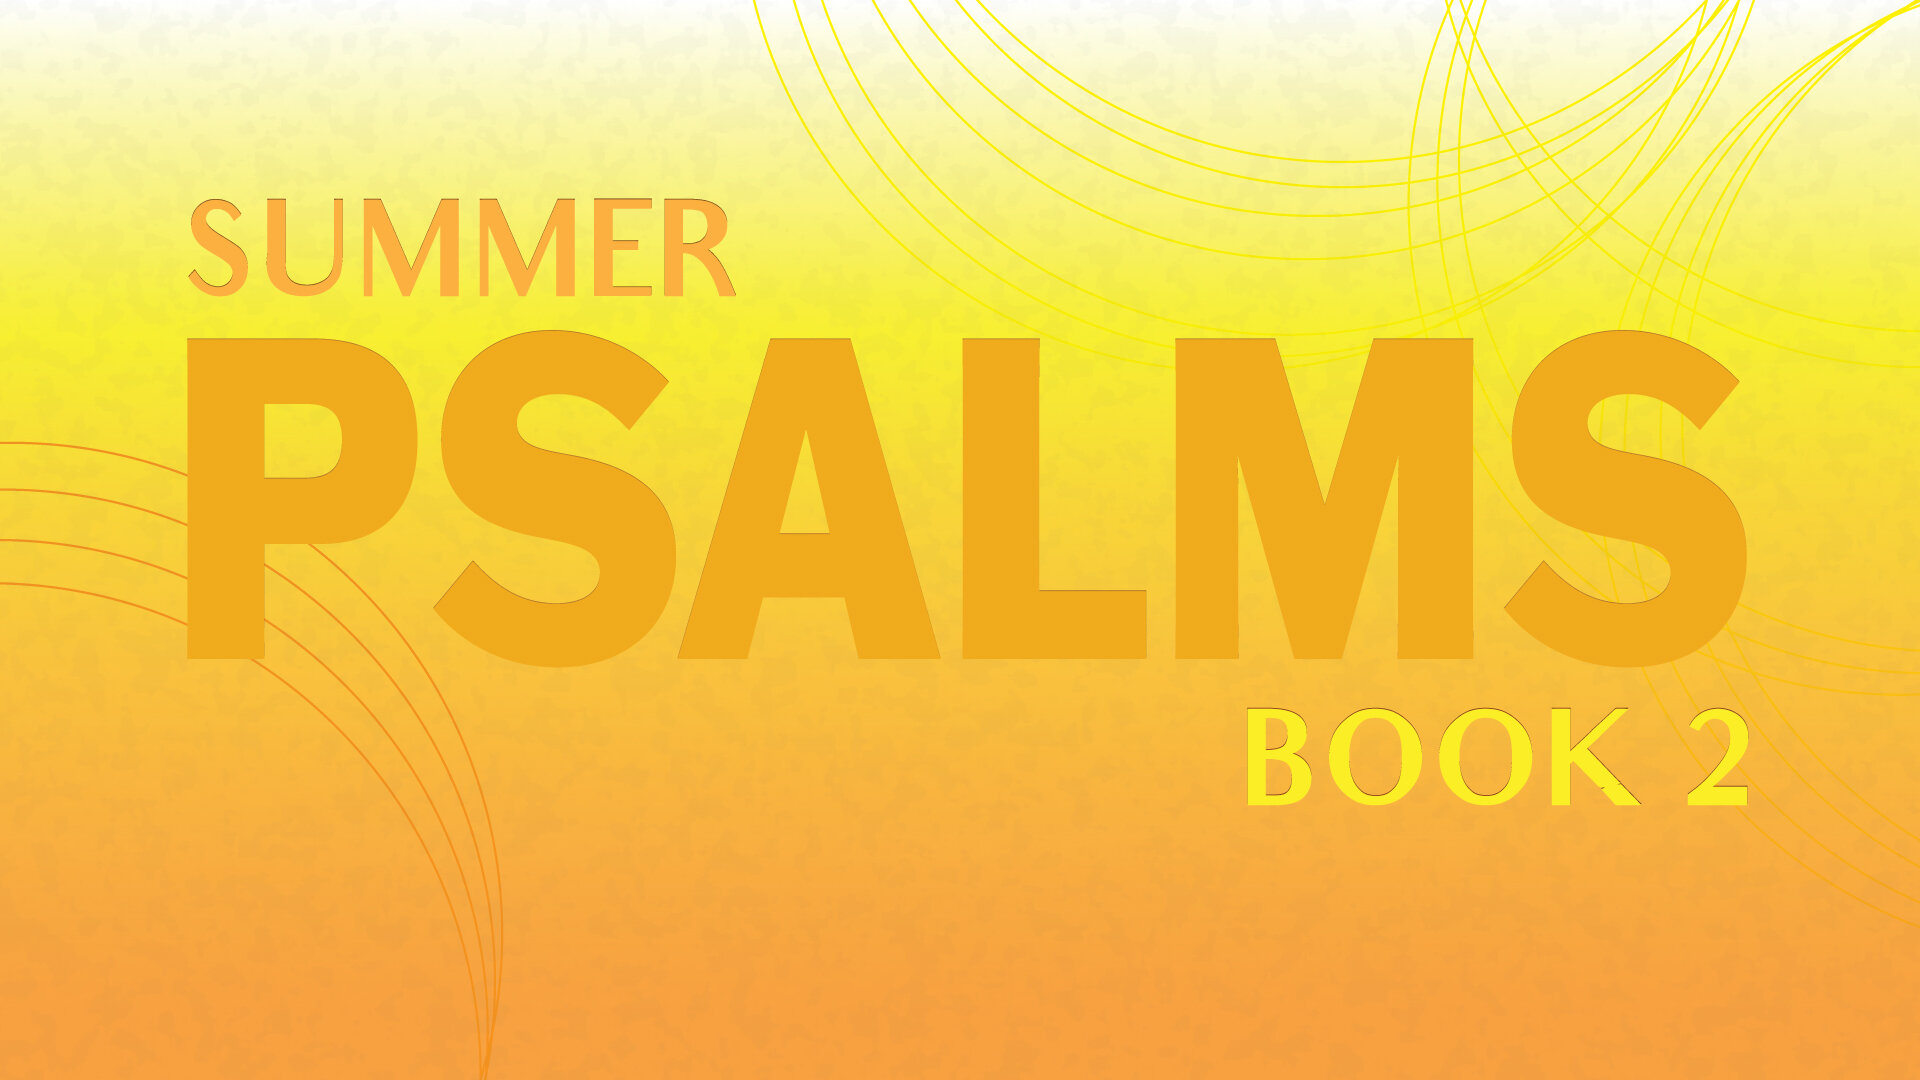 Message Series: Summer Psalms: Book 2